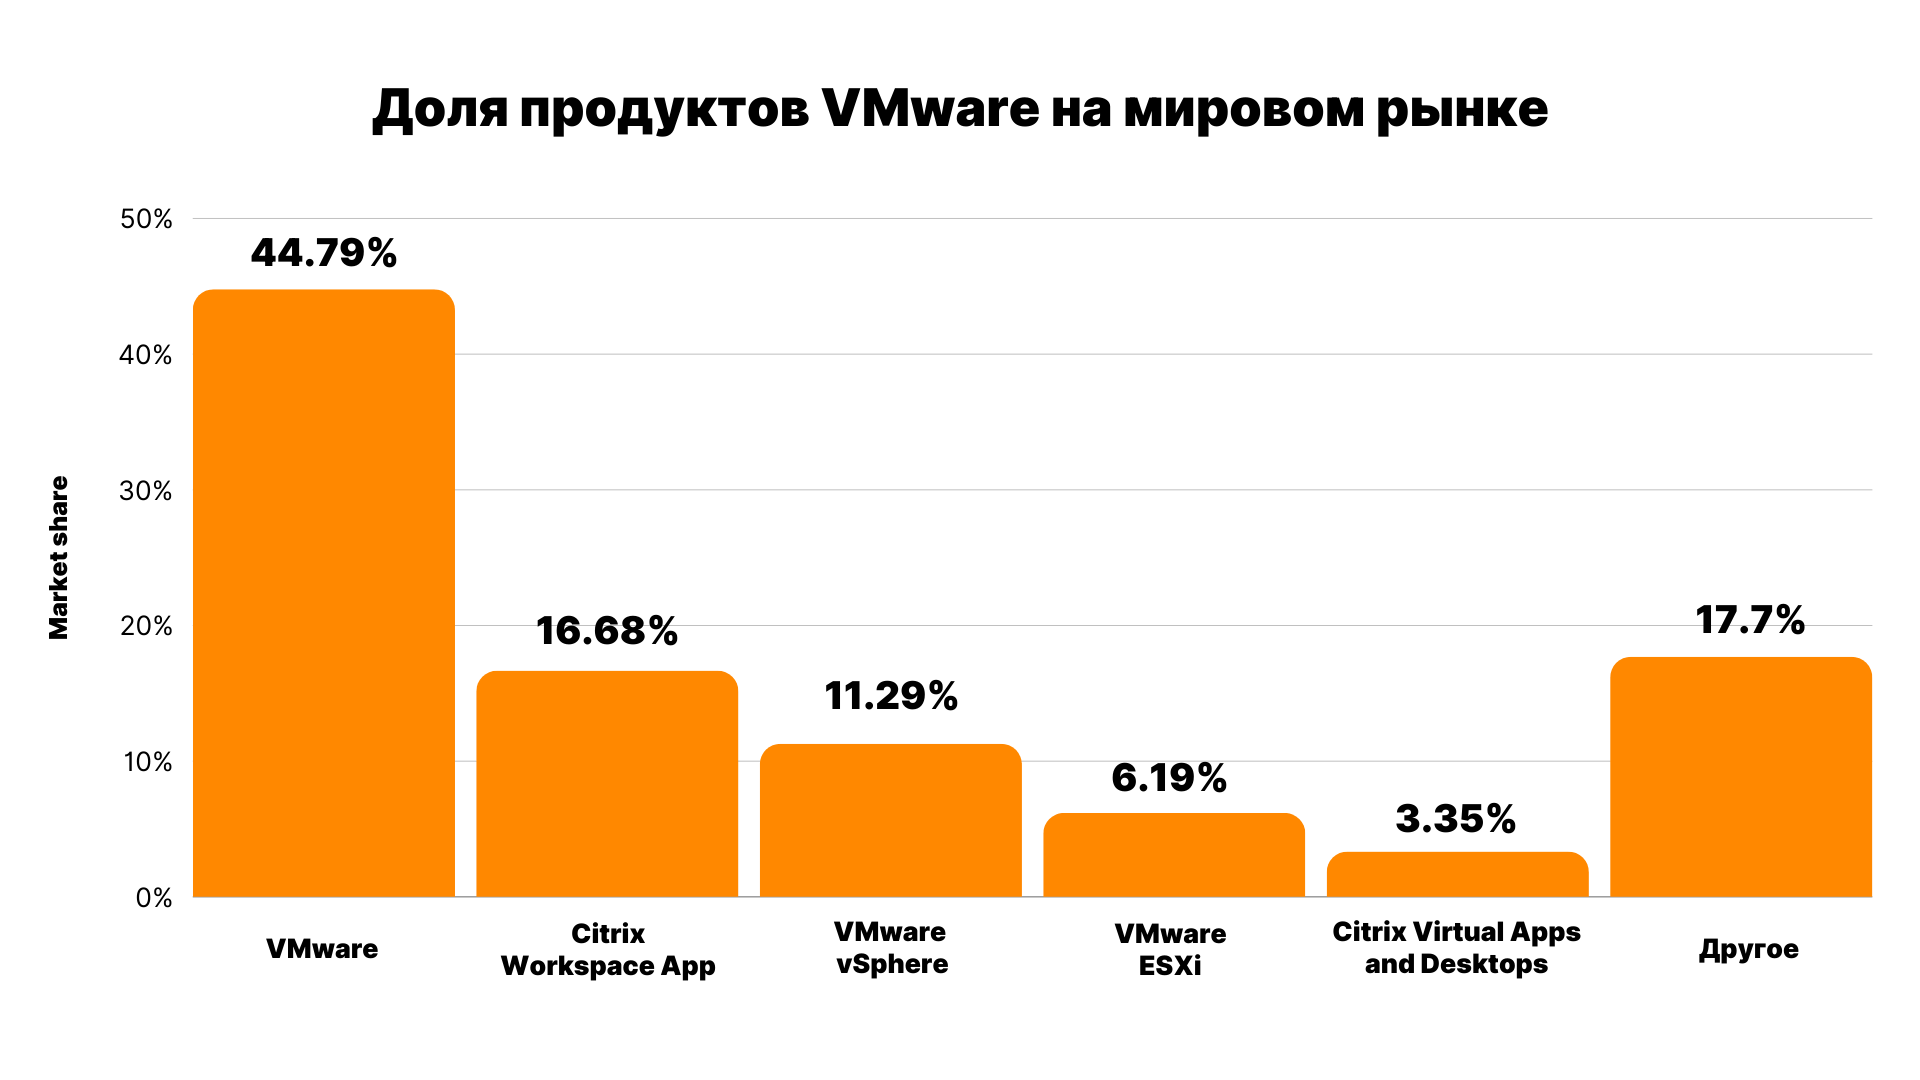 Доля продуктов VMware на мировом рынке. Источник: Statista